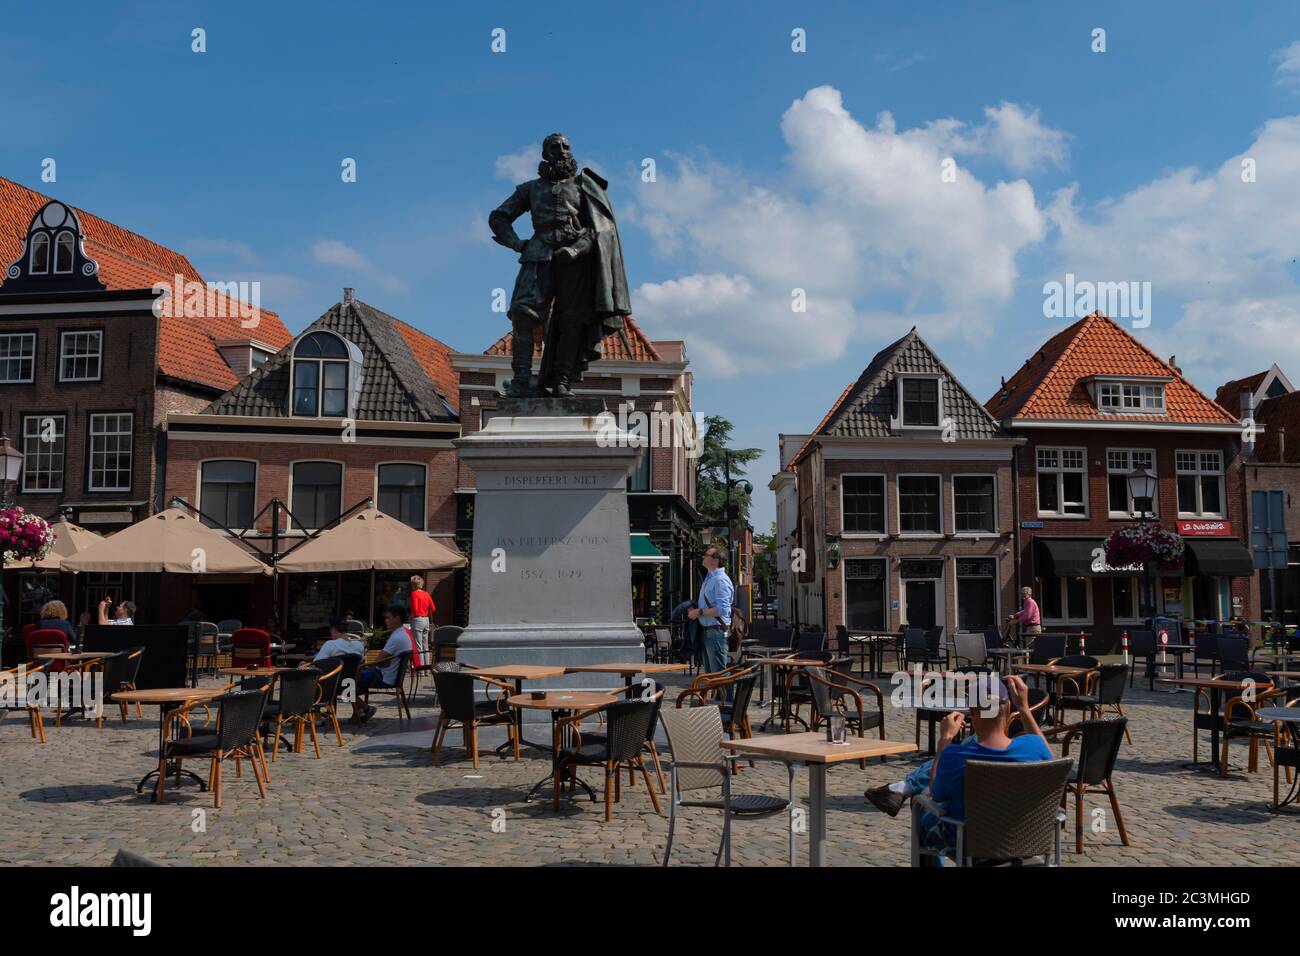 HOORN, PAYS-BAS - JUIN 19 : statue de Jan Pieterszoon Coen, gouverneur des colonies néerlandaises au XVIIe siècle, le 19 juin 2020 à Hoorn, pays-Bas Banque D'Images